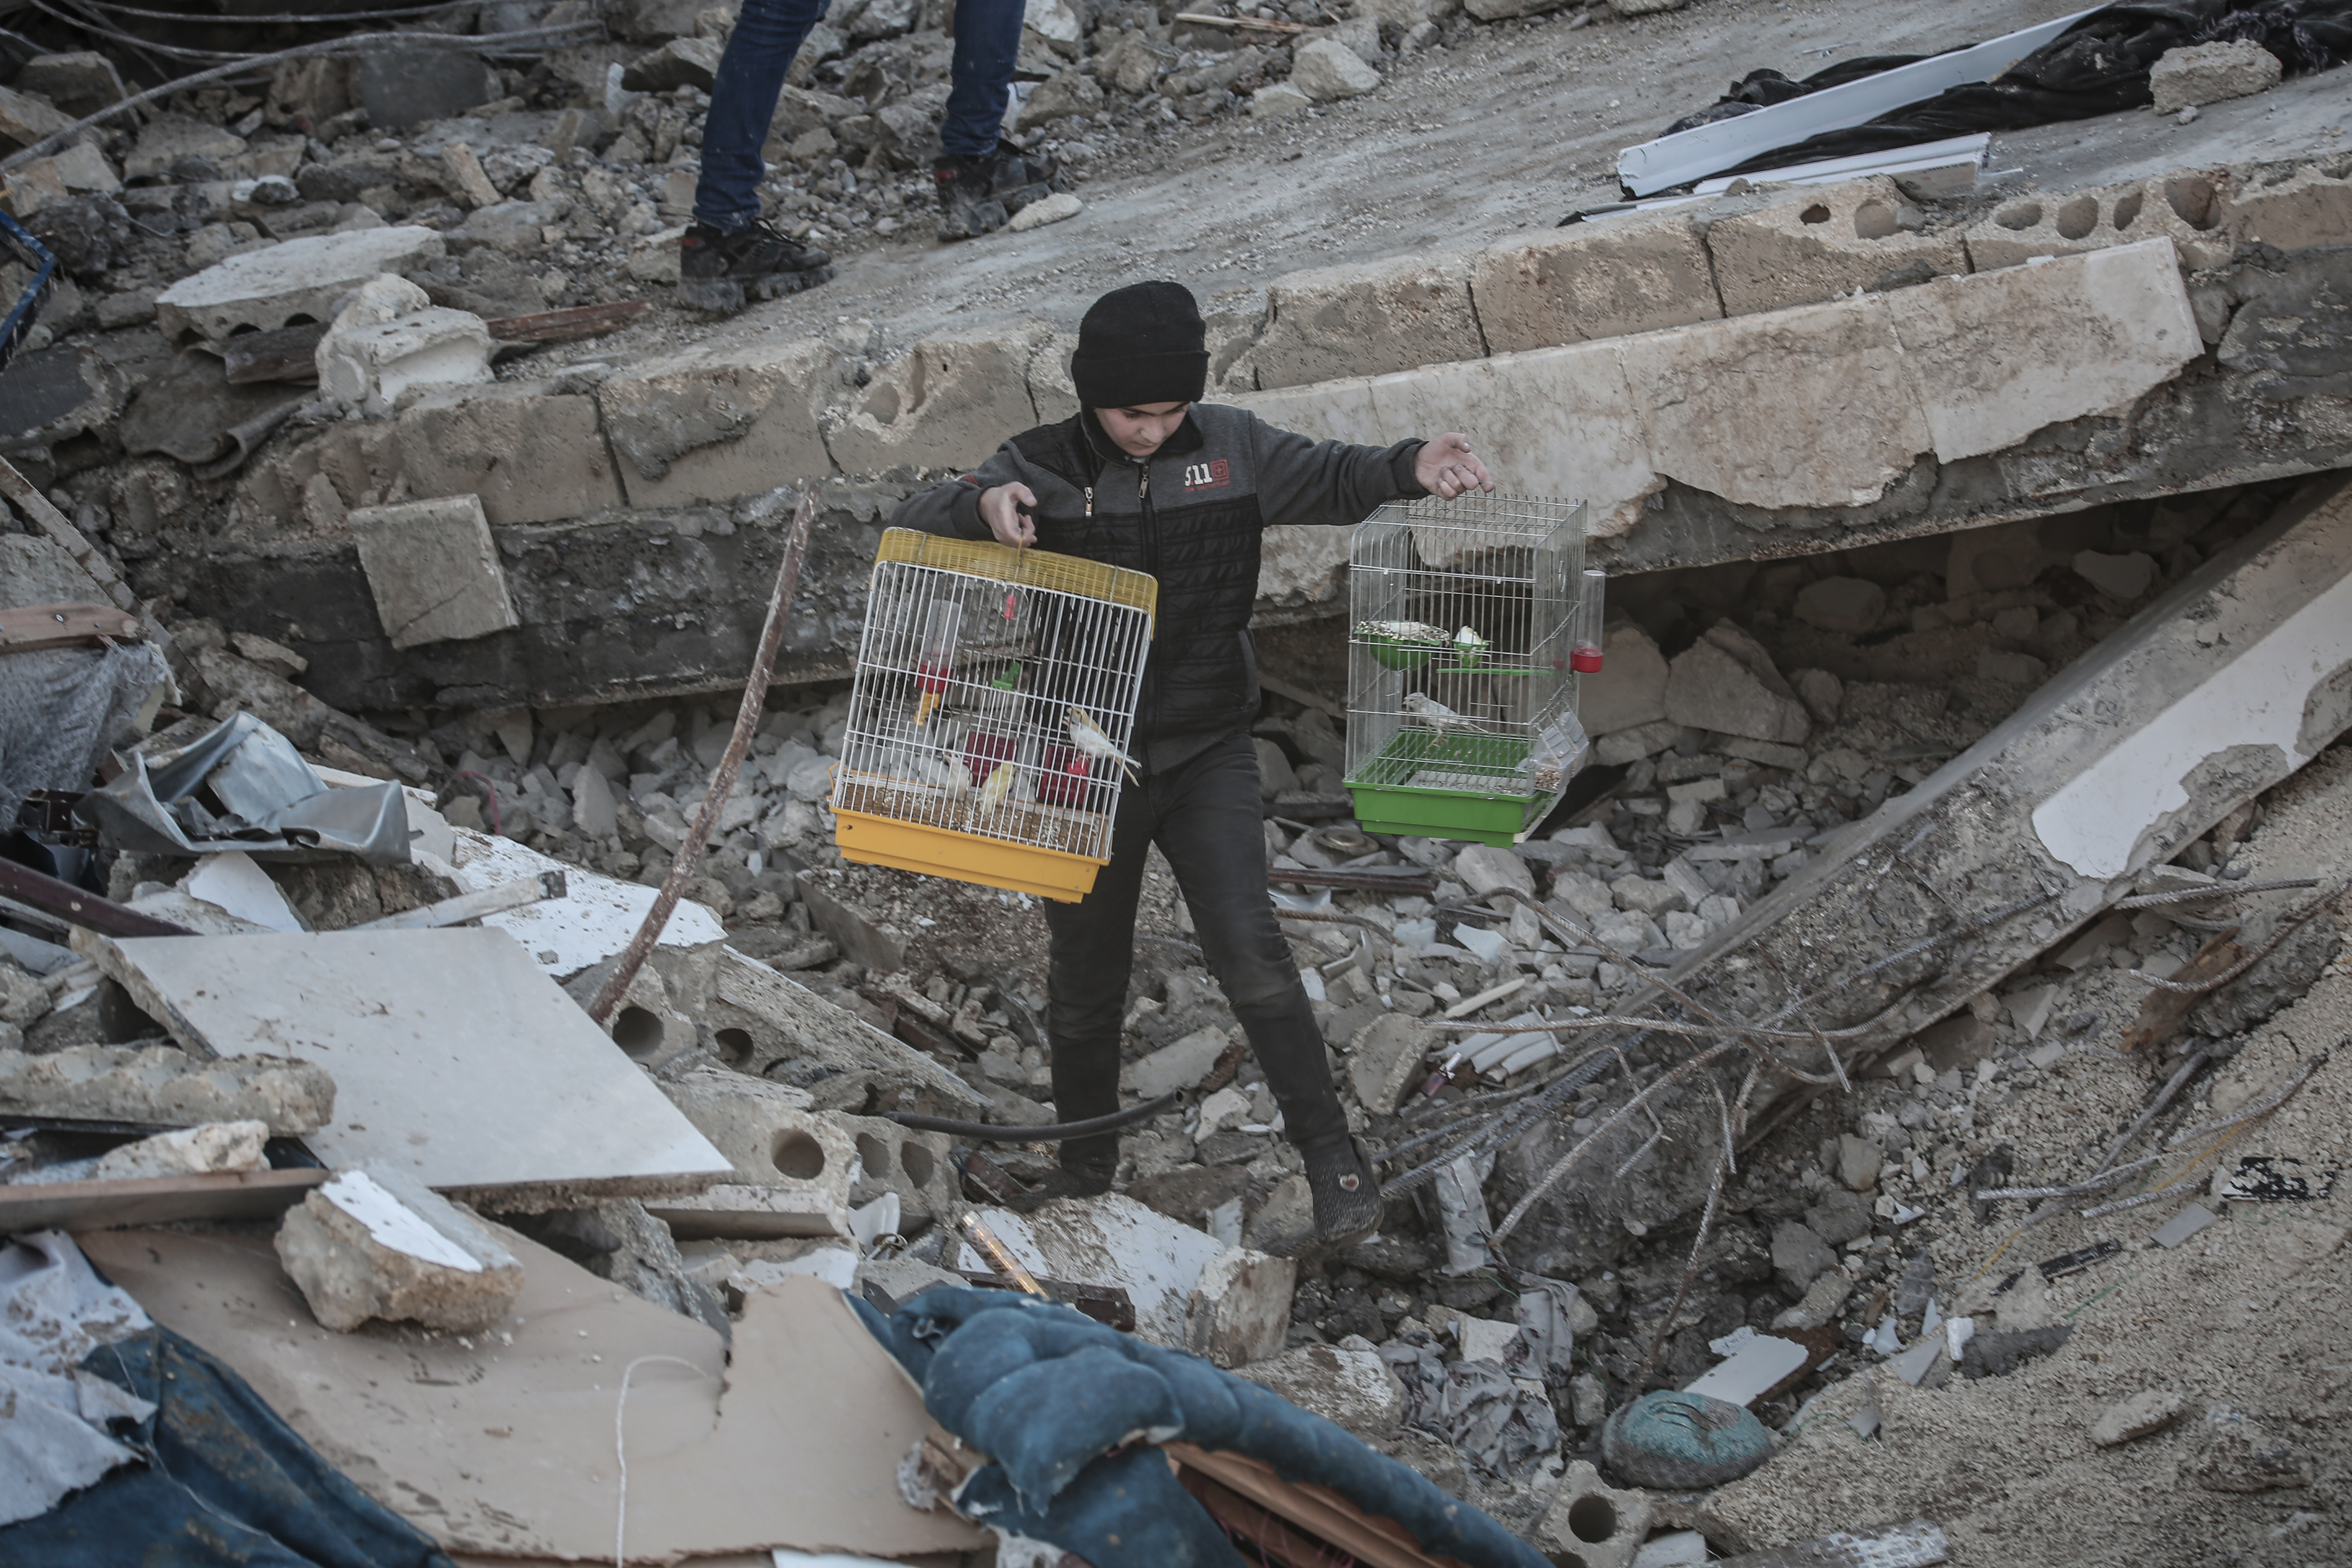 Imagini impresionante cu zeci de animale care au fost scoase de sub dărâmături, în urma cutremurelor devastatoare din Turcia - Imaginea 3